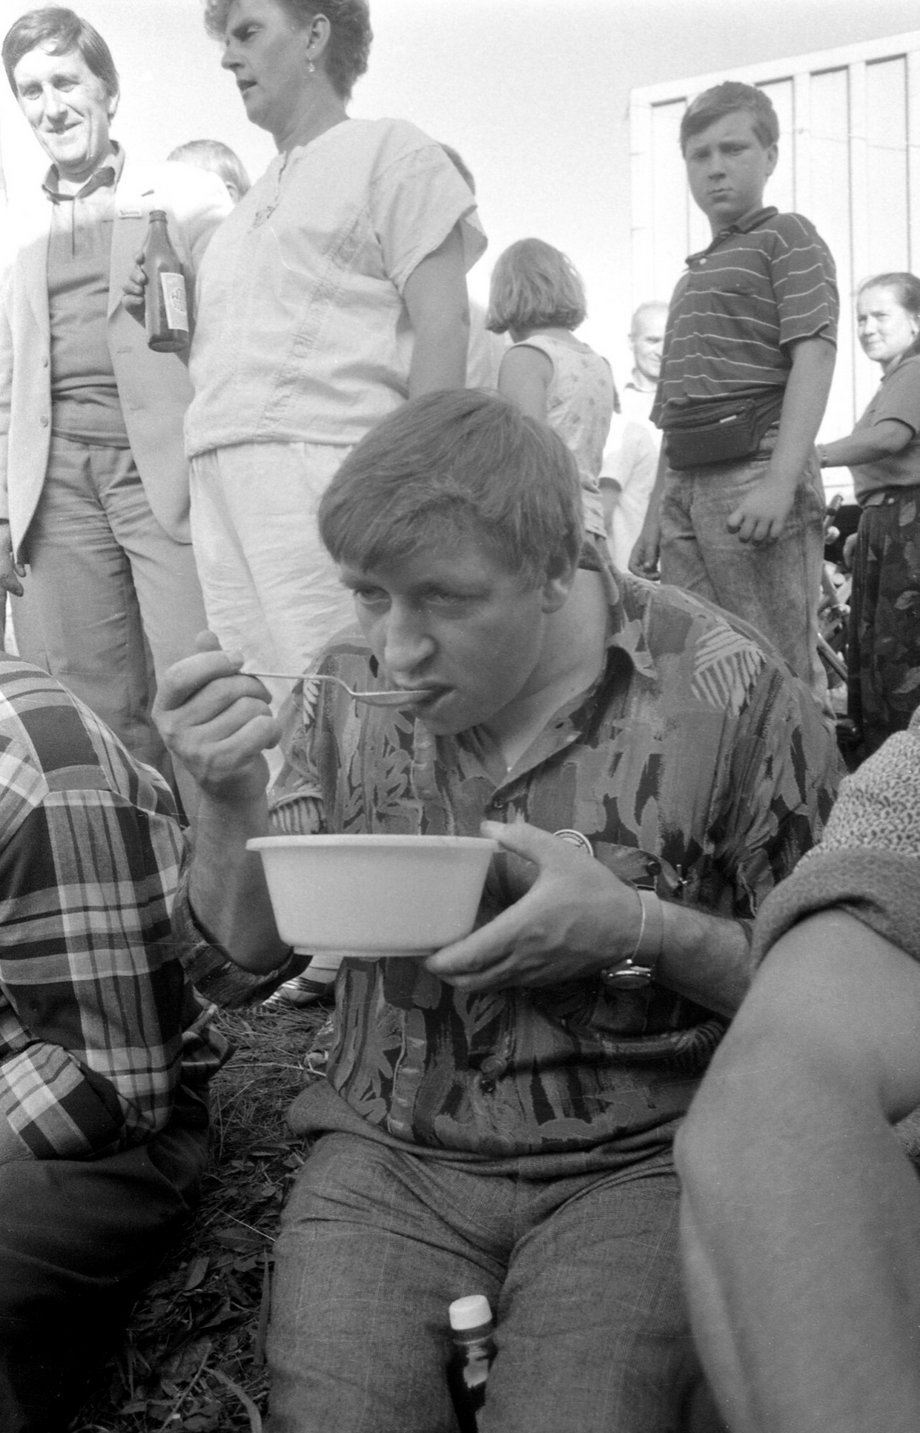 Trasa katowicka pod Morami w województwie mazowieckim - blokada zorganizowana przez Związek Zawodowy Rolnictwa "Samoobrona", 9 lipca 1992.  Andrzej Lepper, przywódca Samoobrony.